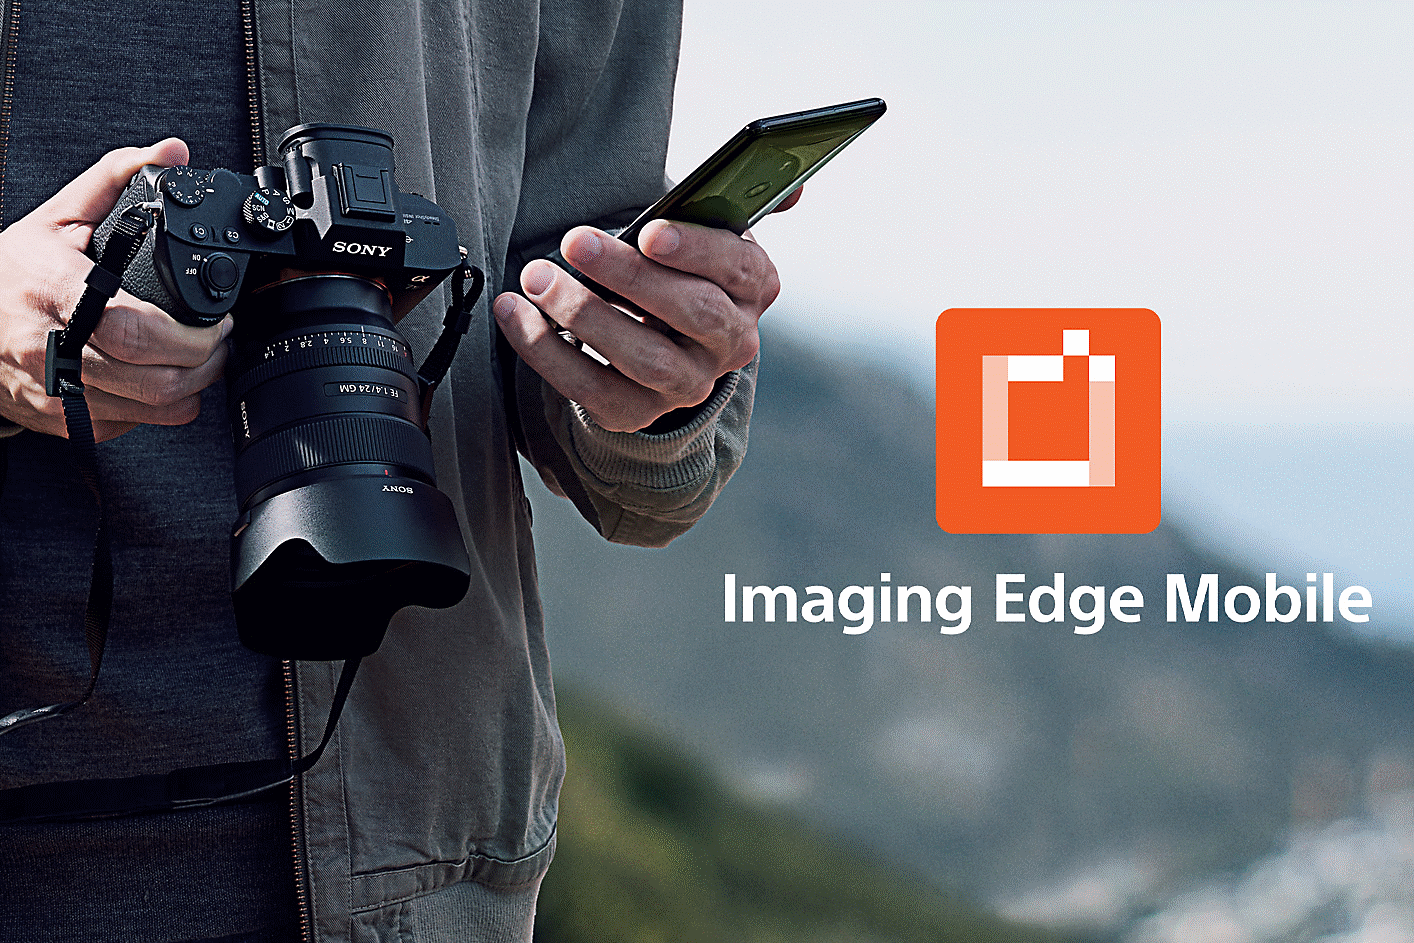 Muž držící fotoaparát α1 a smartphone a logo aplikace Imaging Edge Mobile